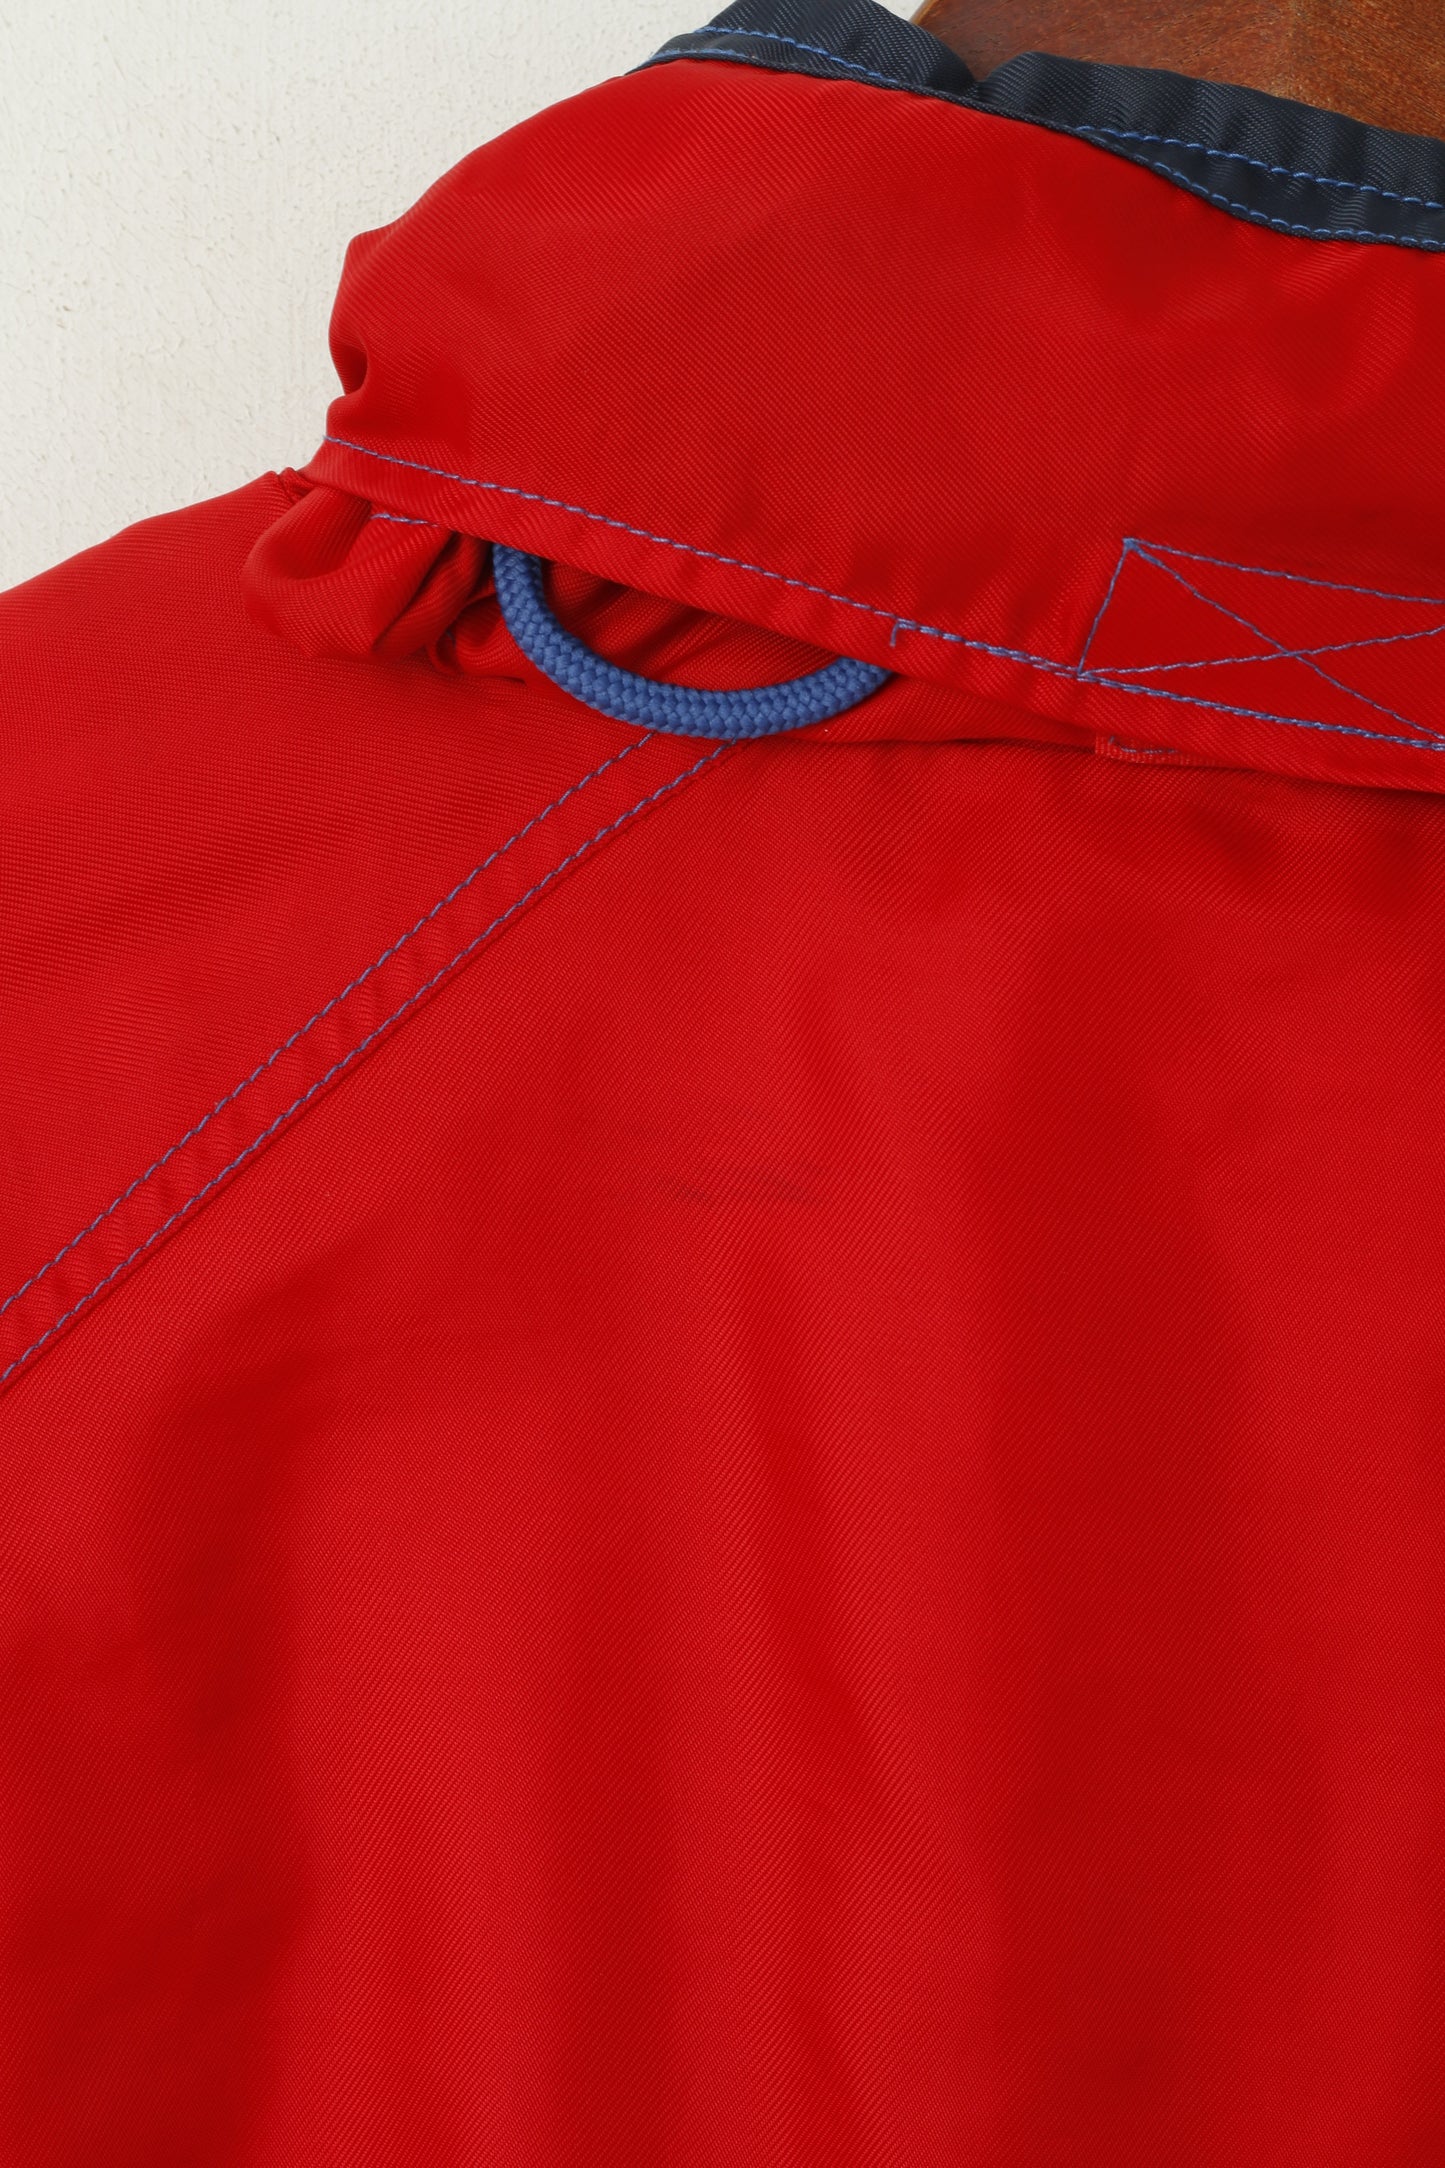 CUP 66 Men XL Jacket Blue Red FC Bayern Munchen Pullover Football Hidden Hood Top